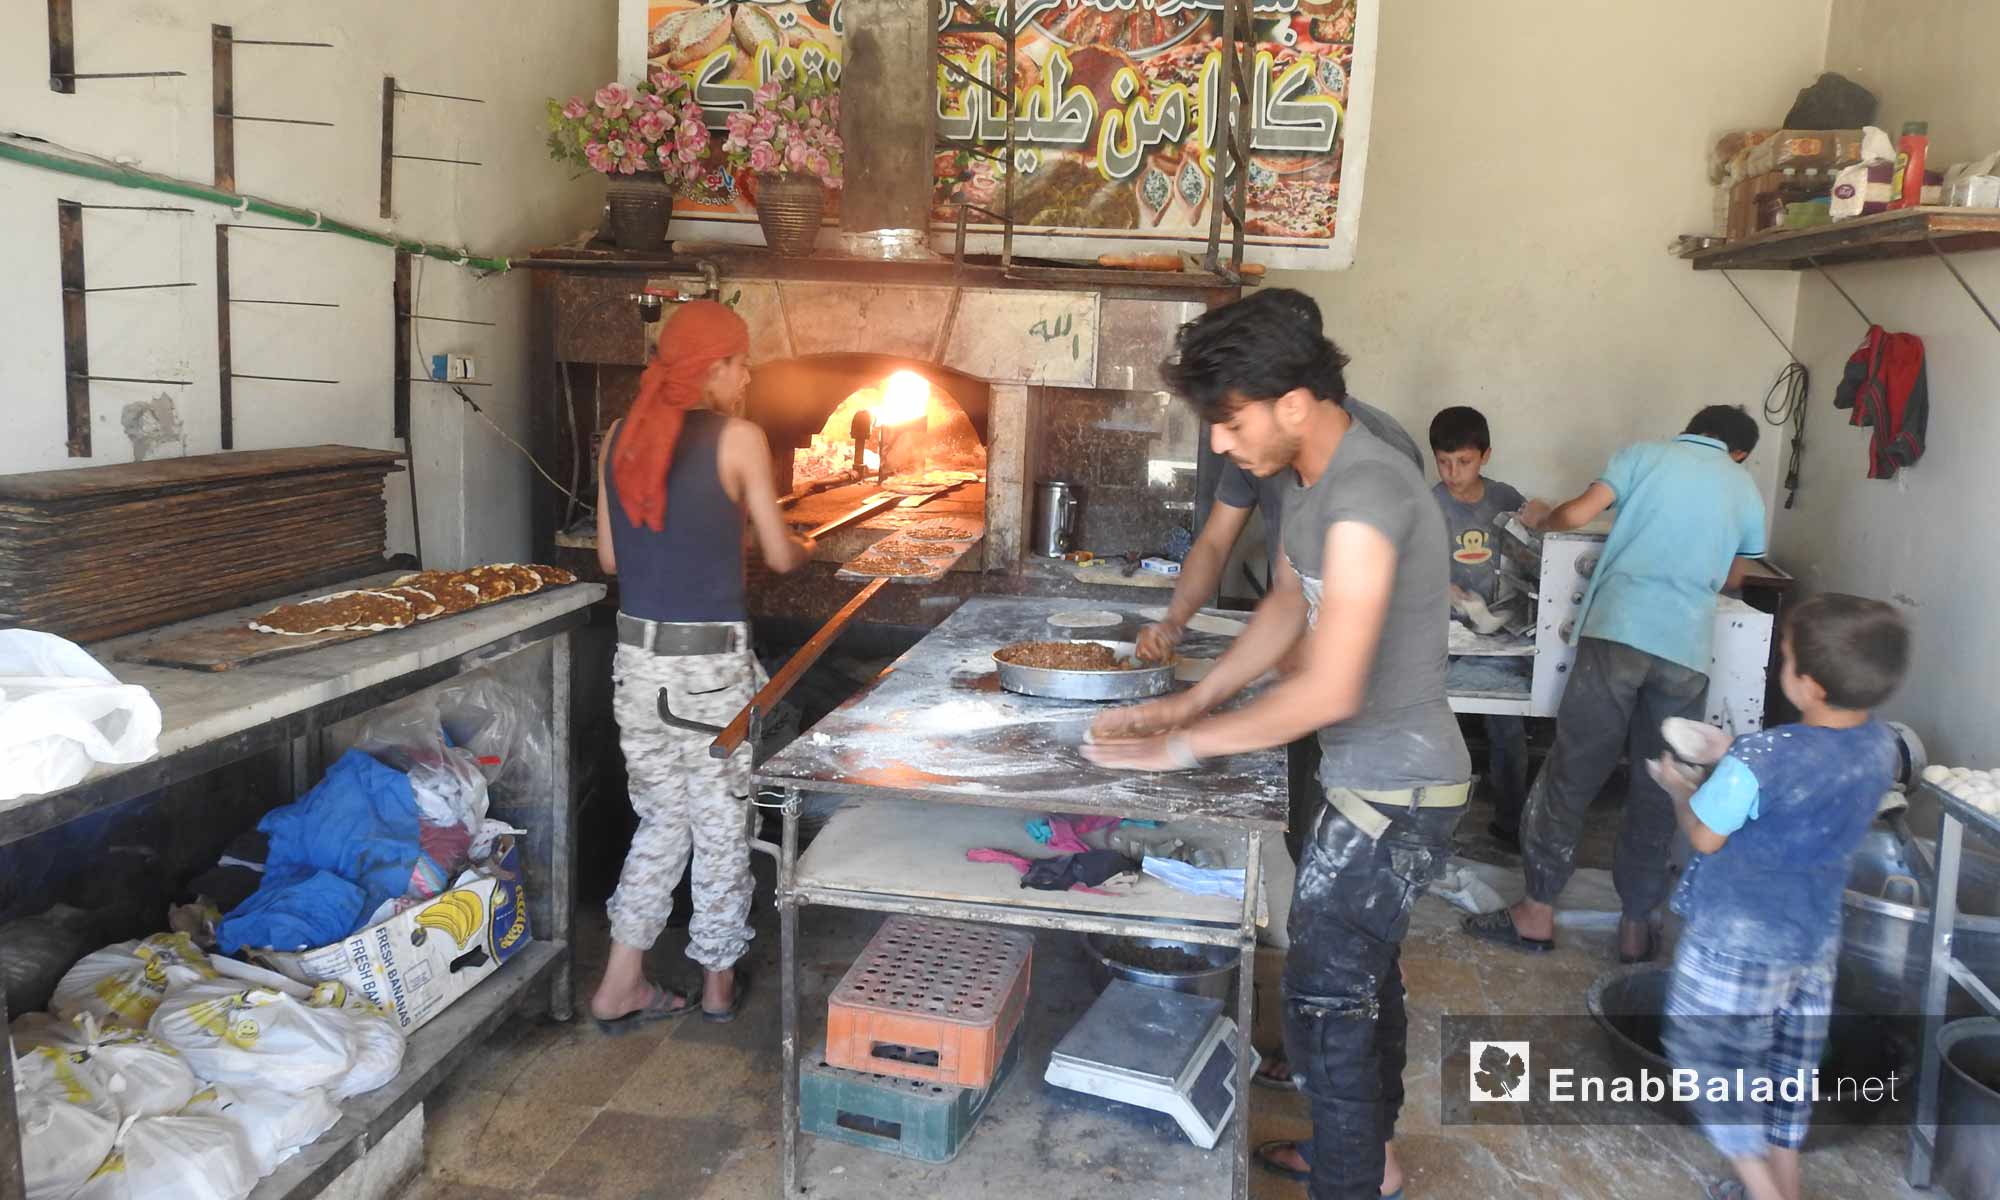 عجينة حلويات الشعيبيات في بلدة صوران بريف حلب الشمالي - 27 أيار 2017 - (عنب بلدي)